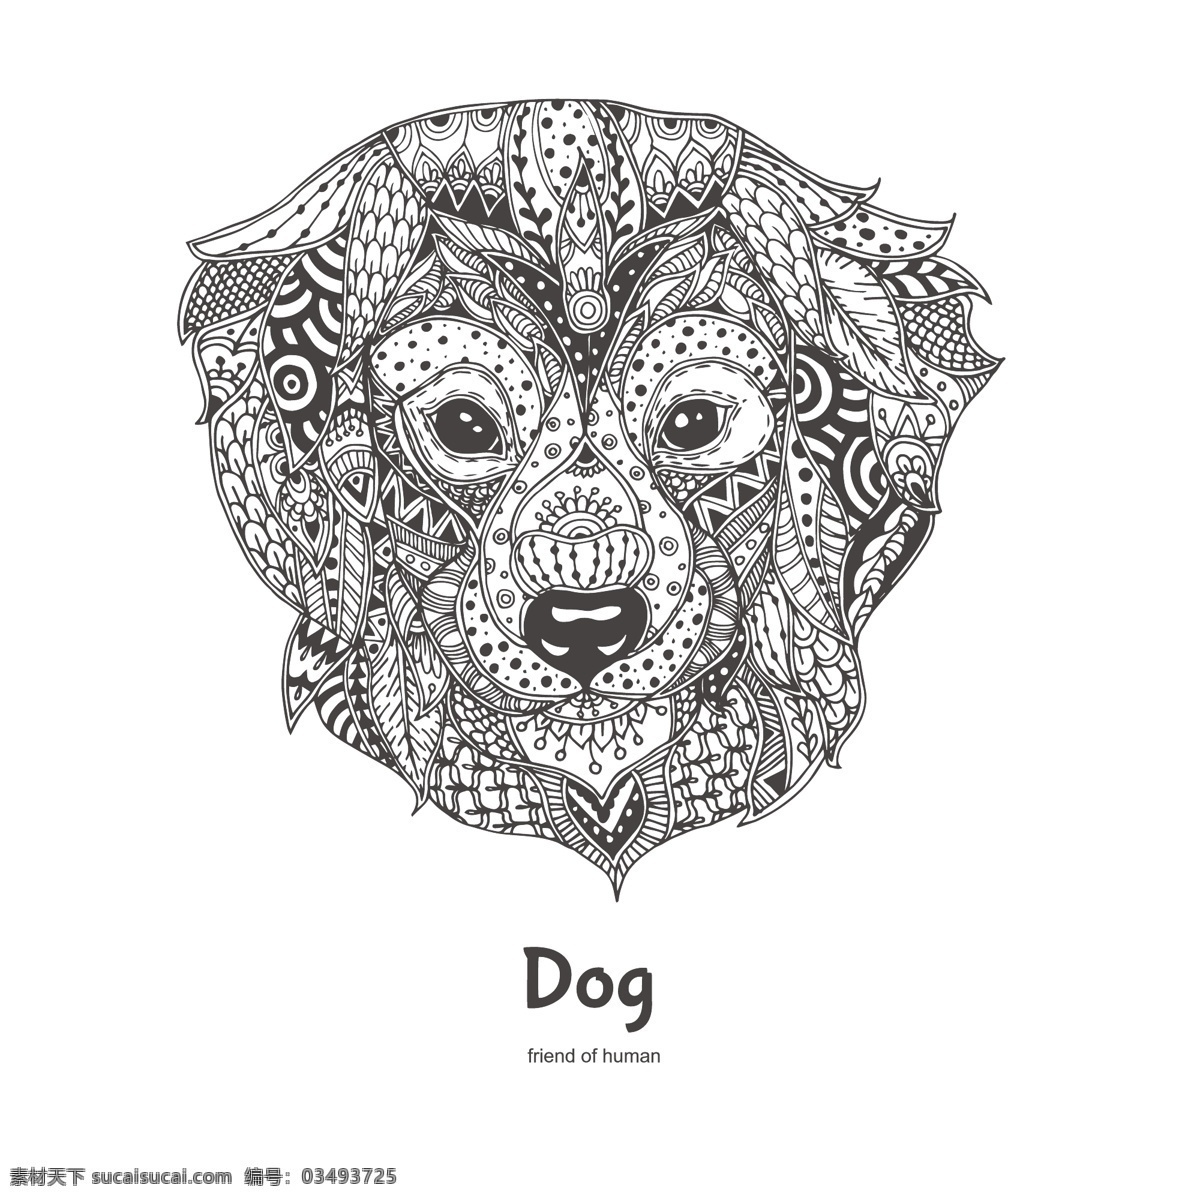 黑白 手绘 艺术 狗 插画 动物 狗头 花纹 卡通 小狗